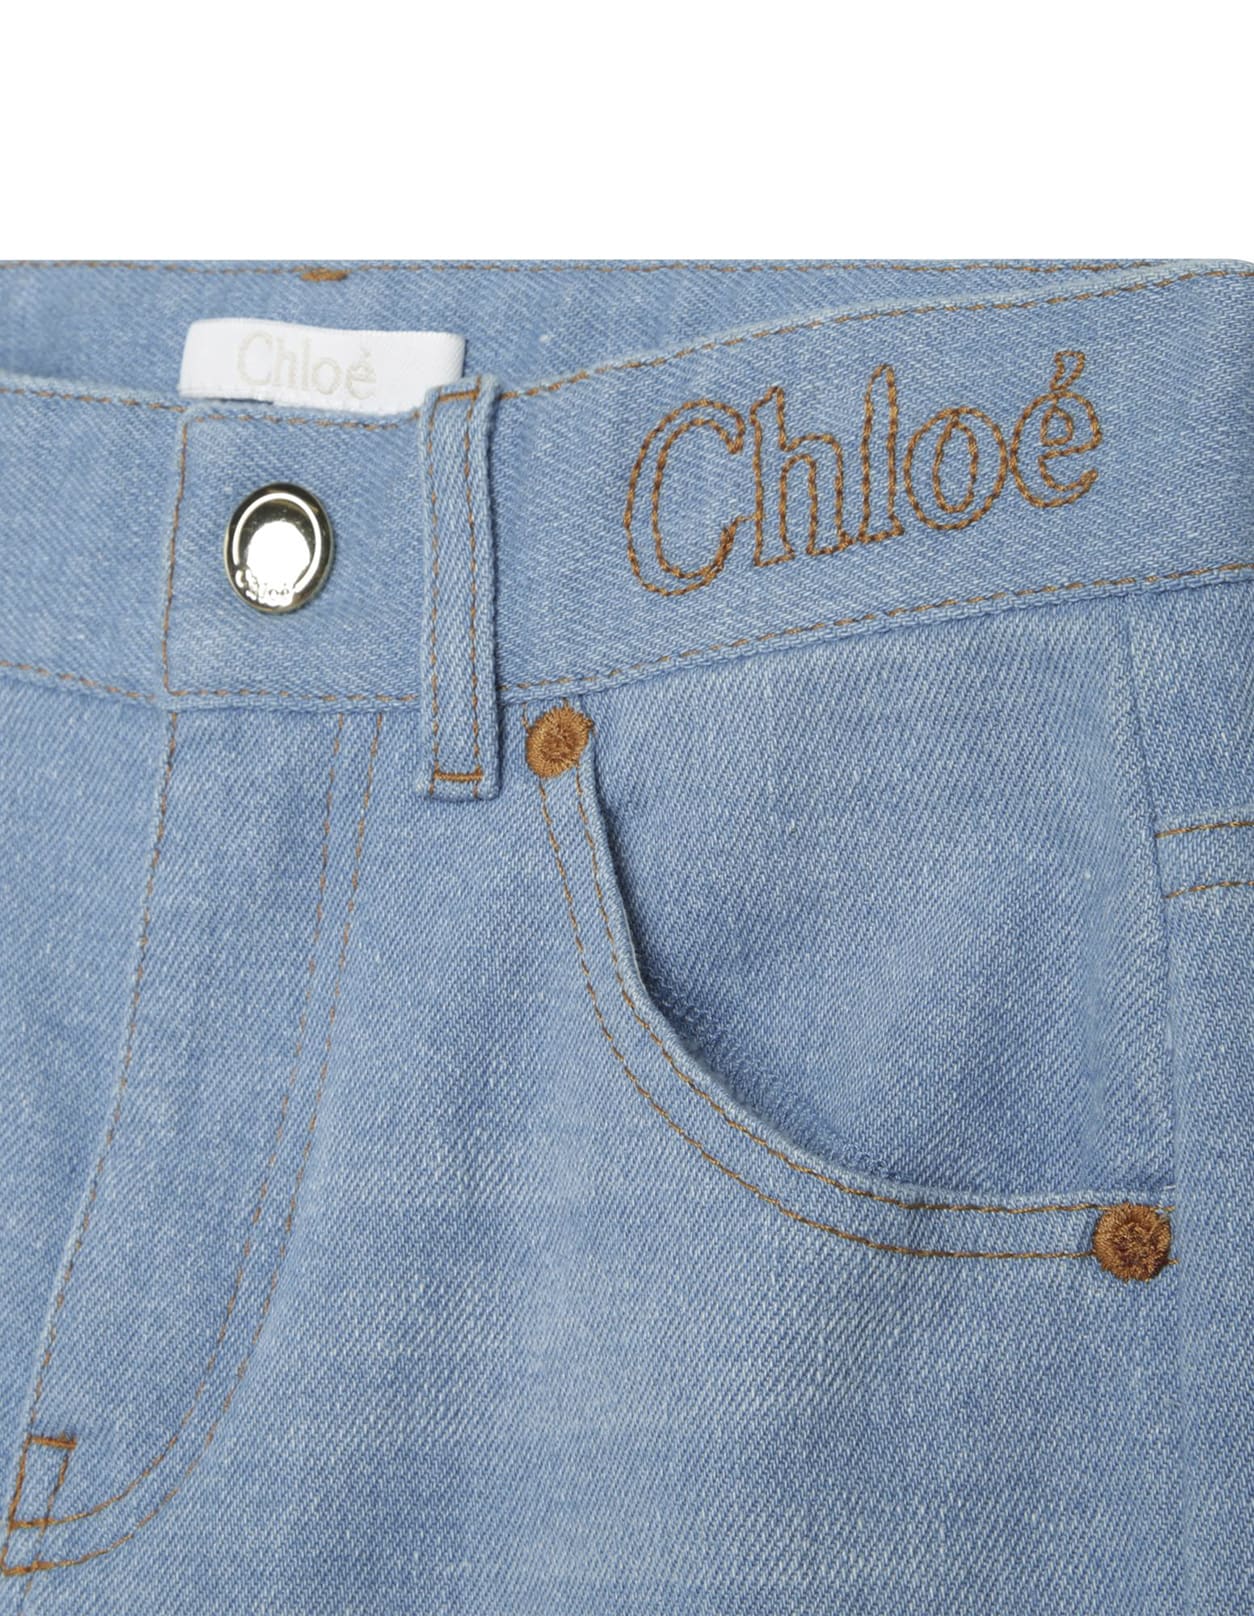 Shop Chloé Blue Patchwork Denim Palazzo Jeans